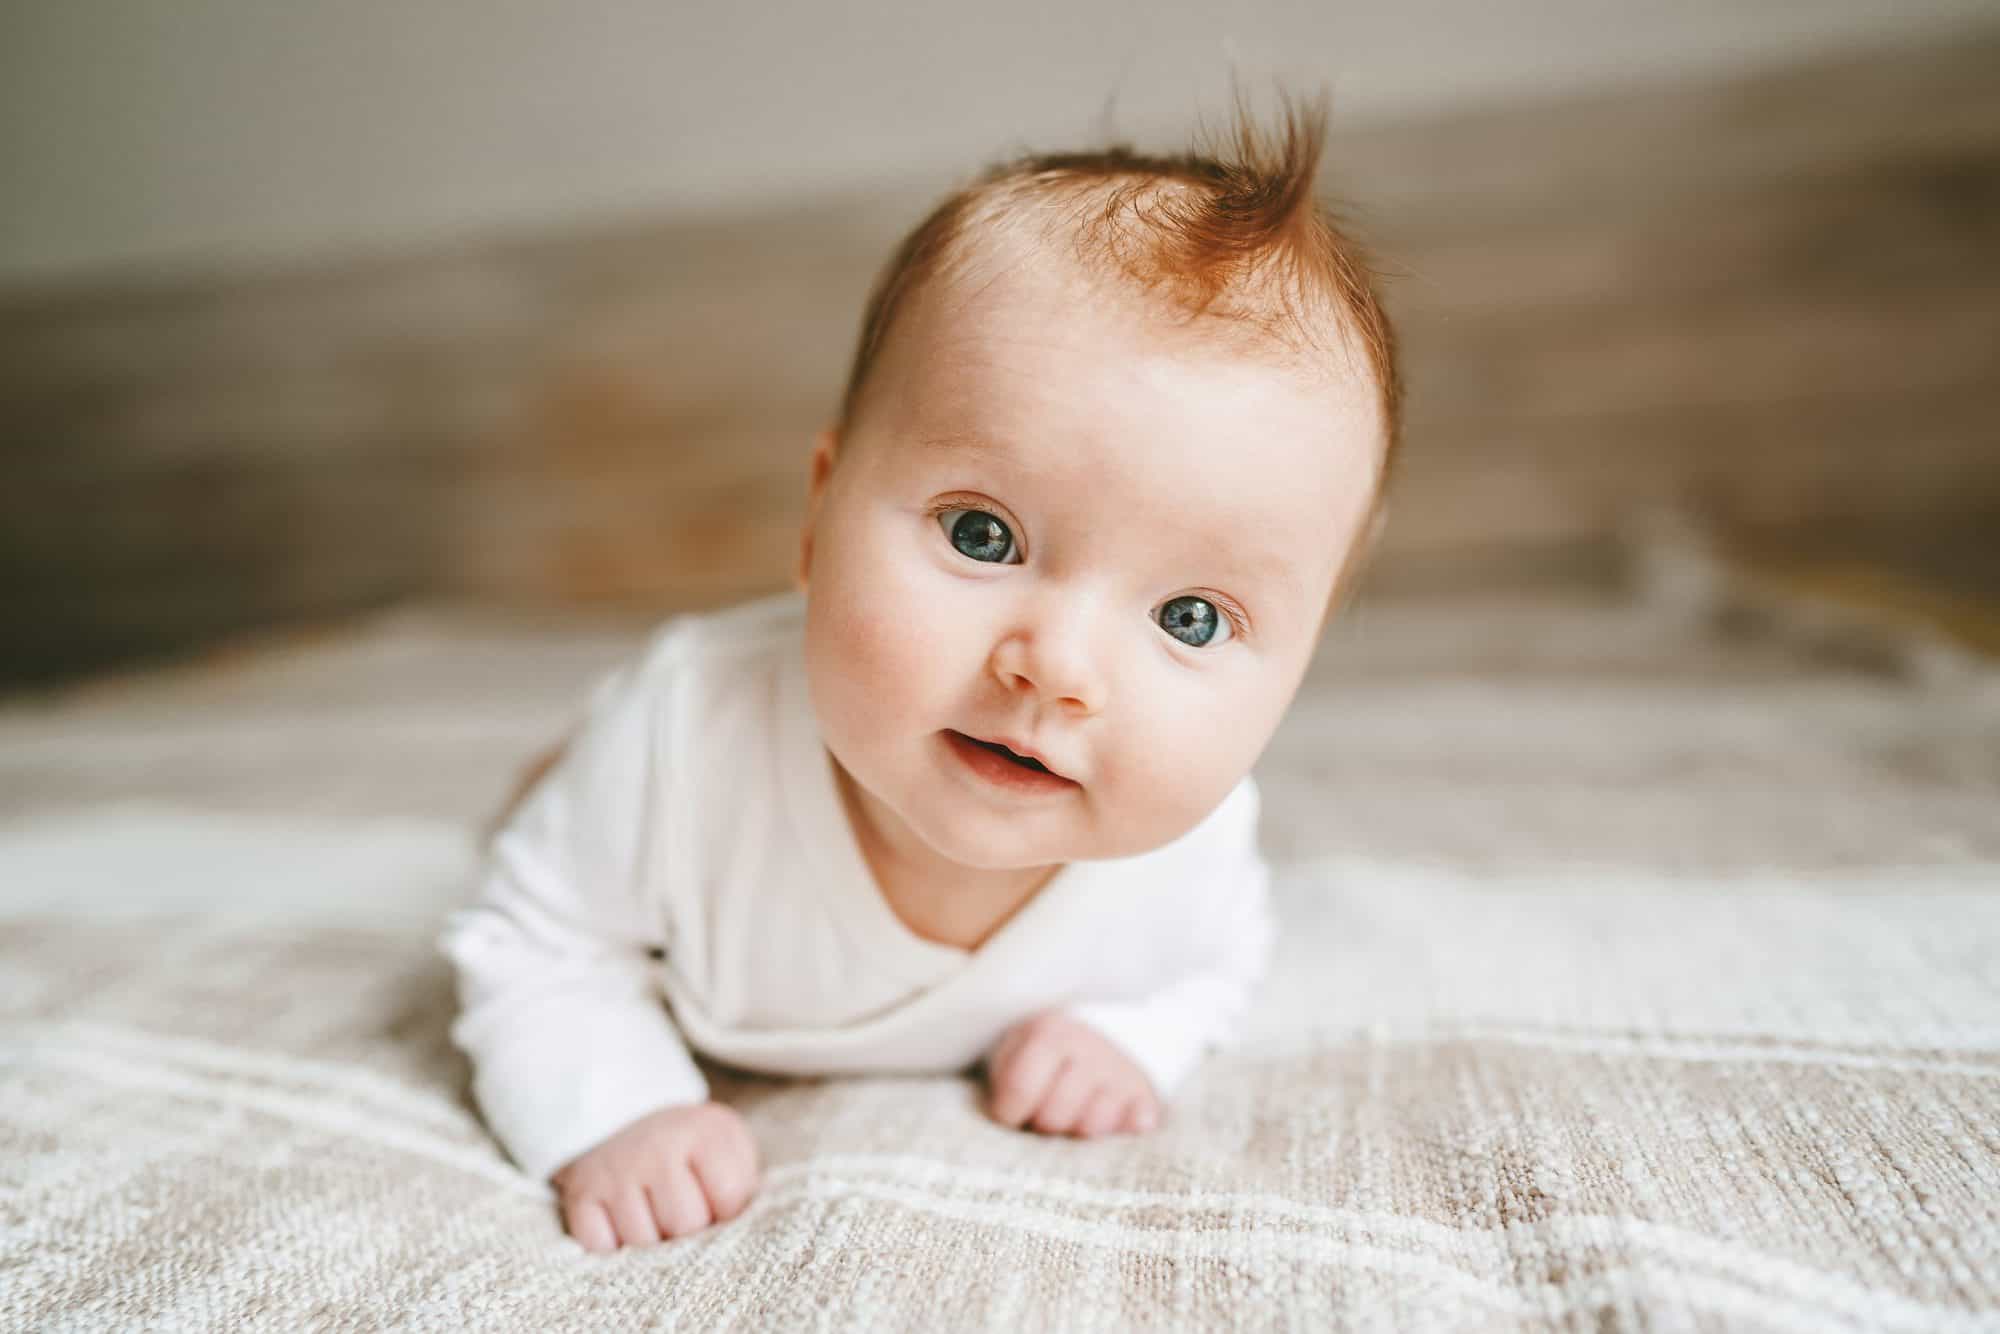 ¿Por qué cambia el pelo de los bebés de rizado a liso y viceversa?